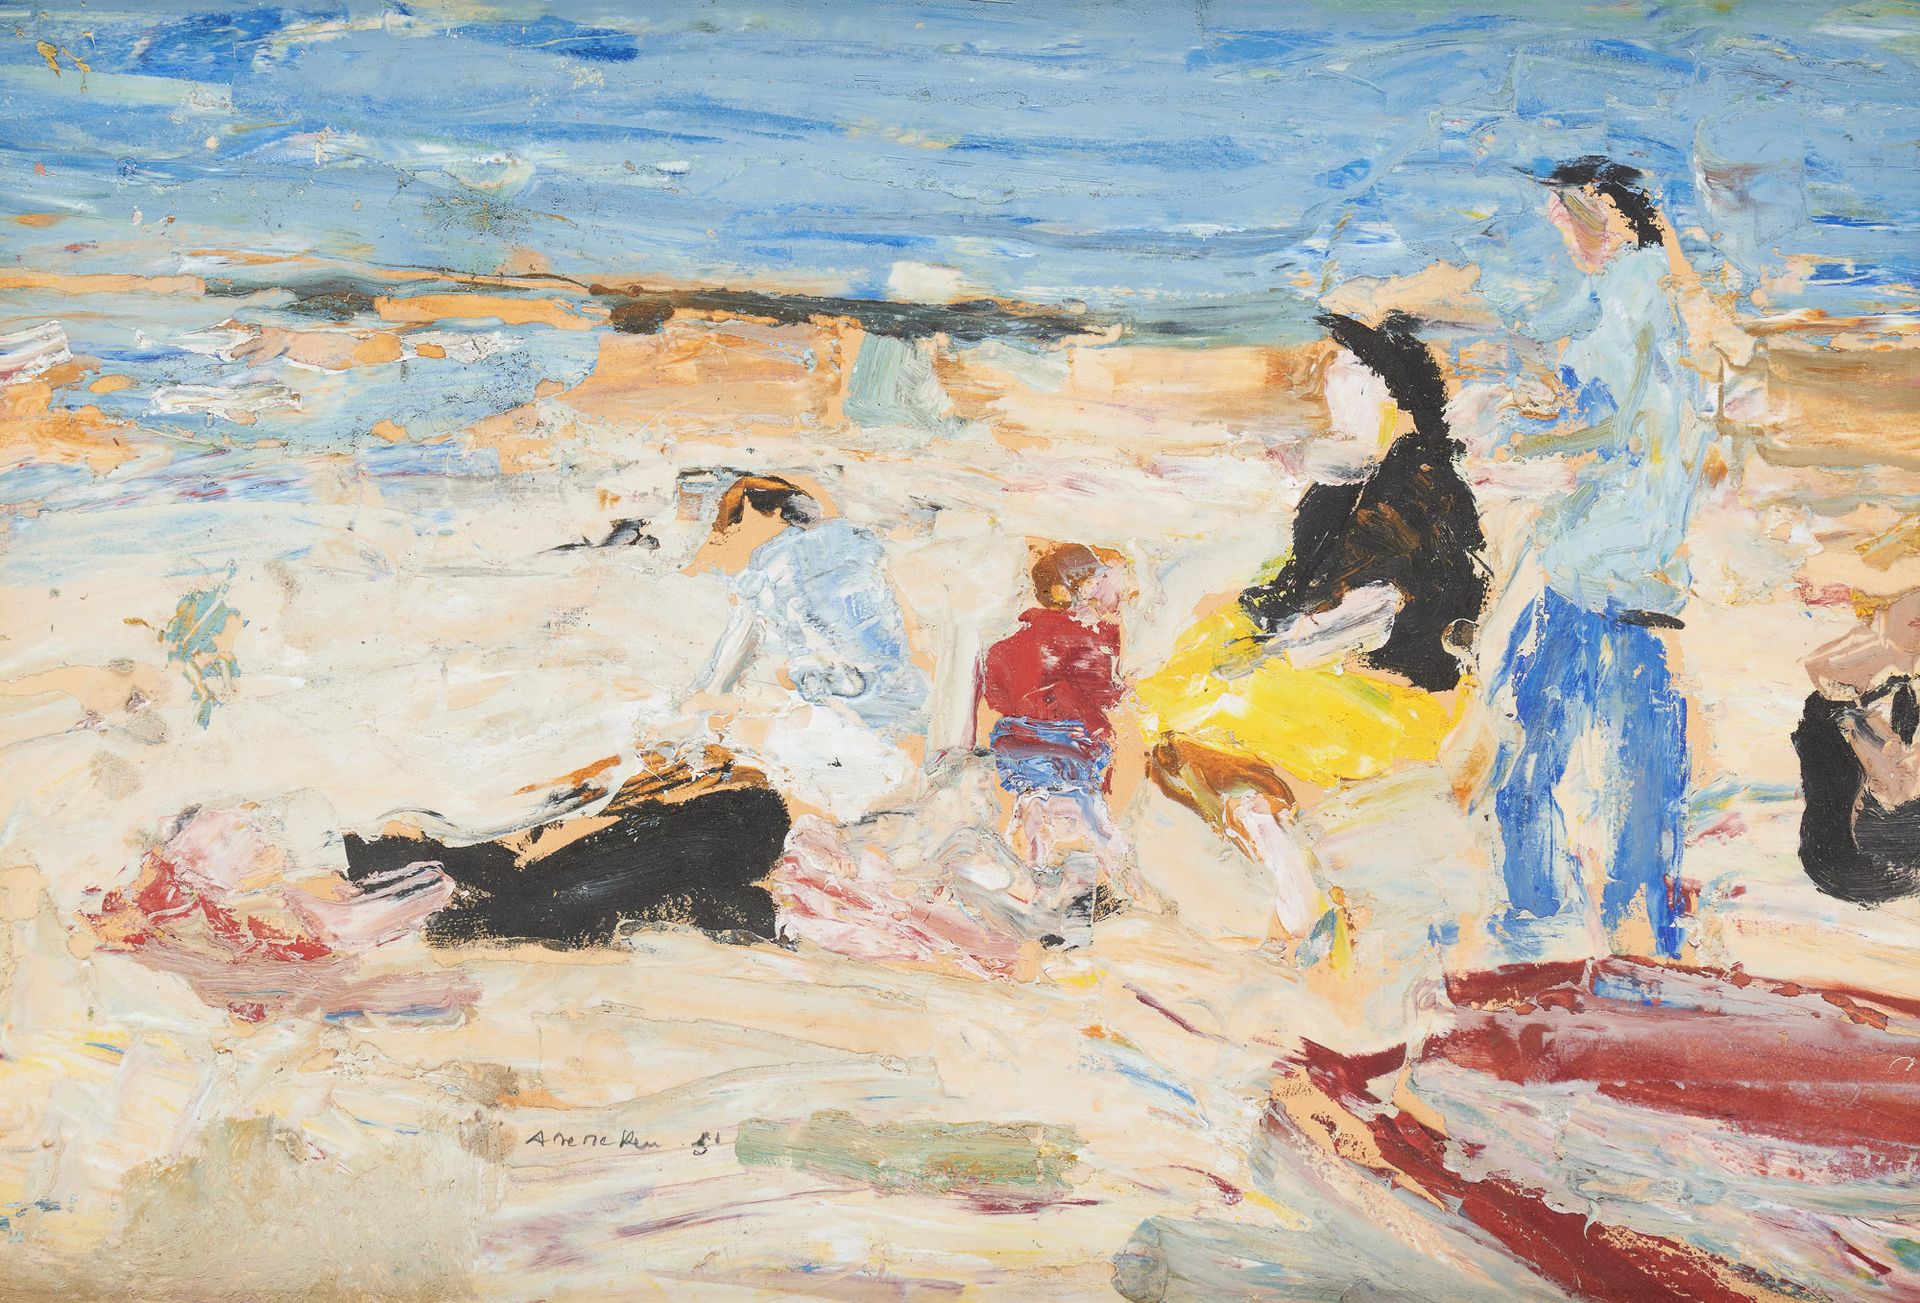 Albert DE DEKEN École belge (1915-2003) Oil on panel: Children at the beach.

Si&hellip;